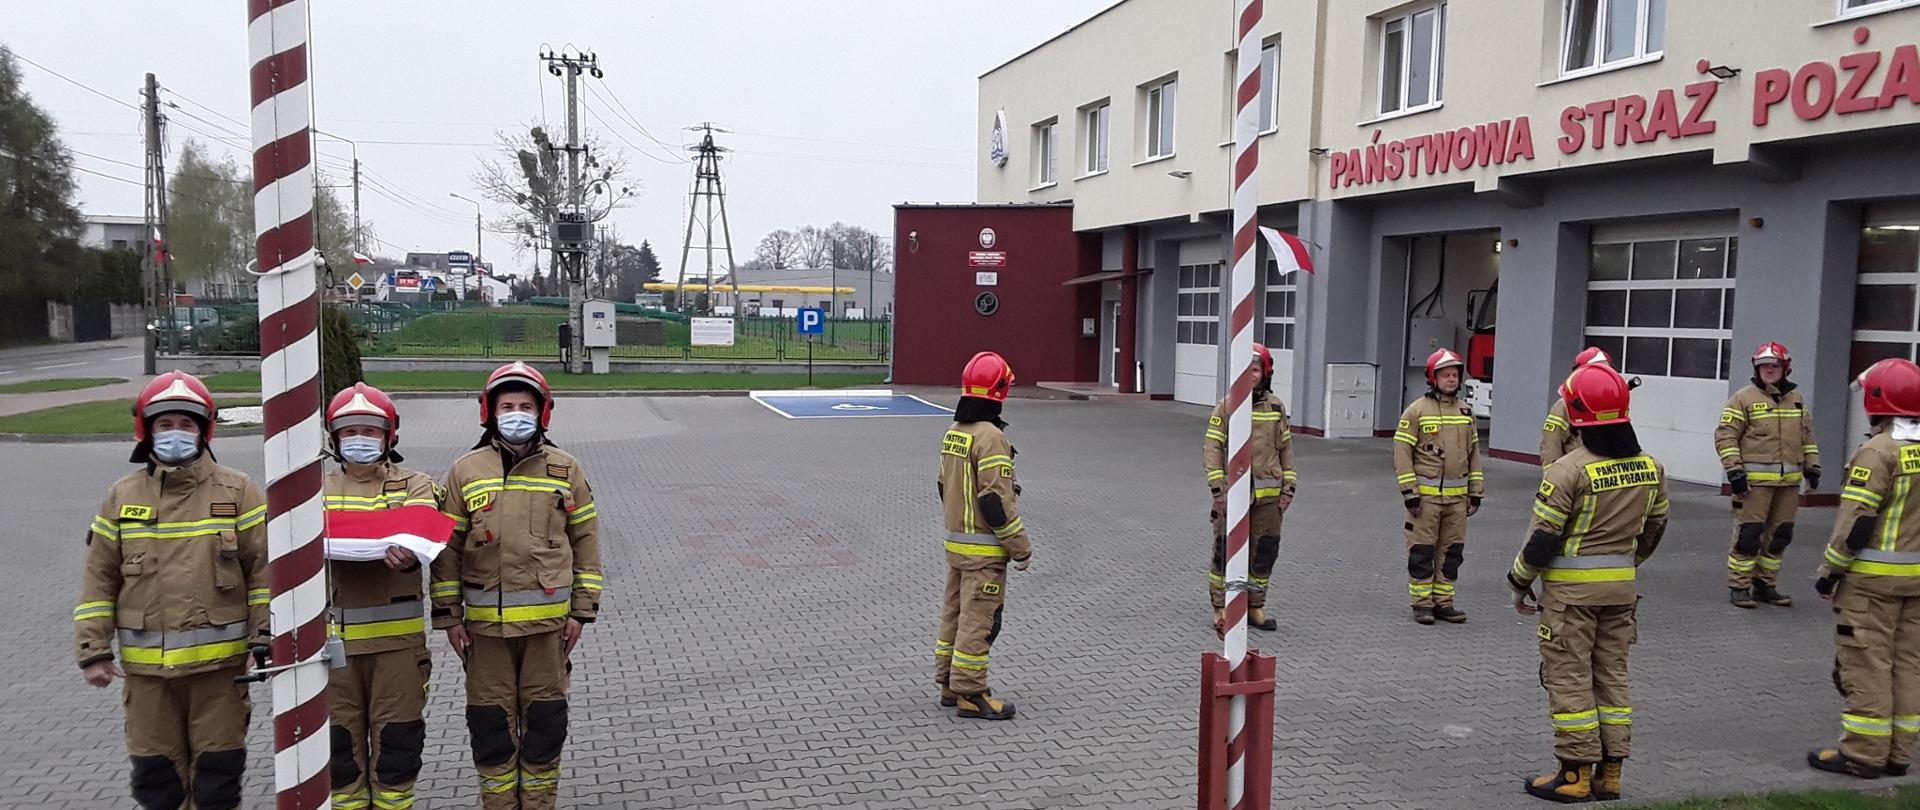 Zdjęcie przedstawia strażaków podczas wciągania flagi Polski na maszt, na dalszym planie widać innych strażaków podczas uroczystej zmiany służby